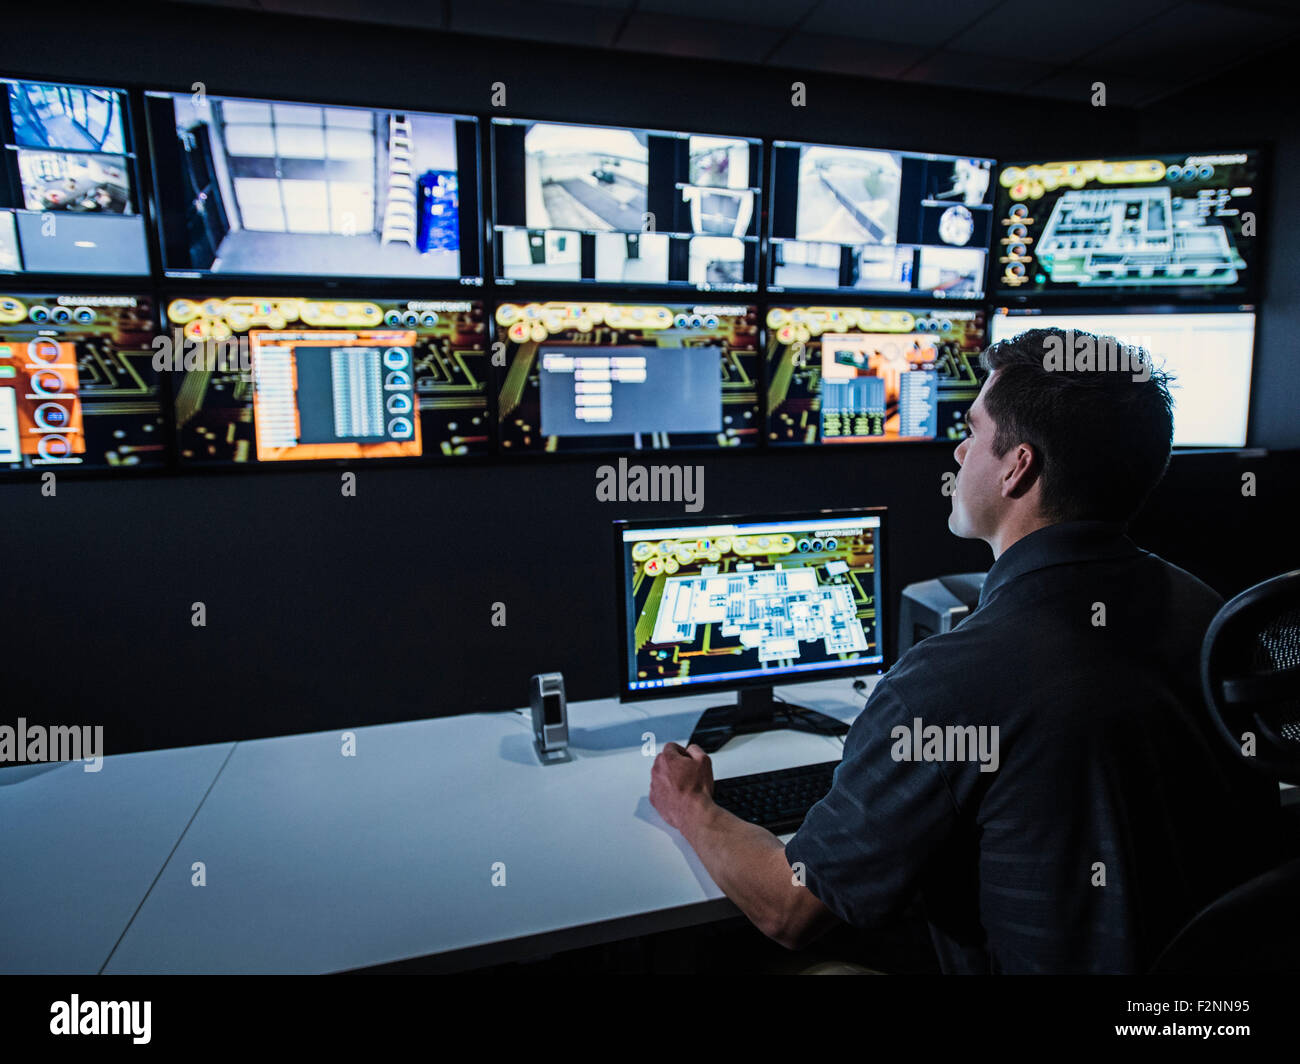 Garde de sécurité hispaniques regardant des écrans dans la salle de commande Banque D'Images